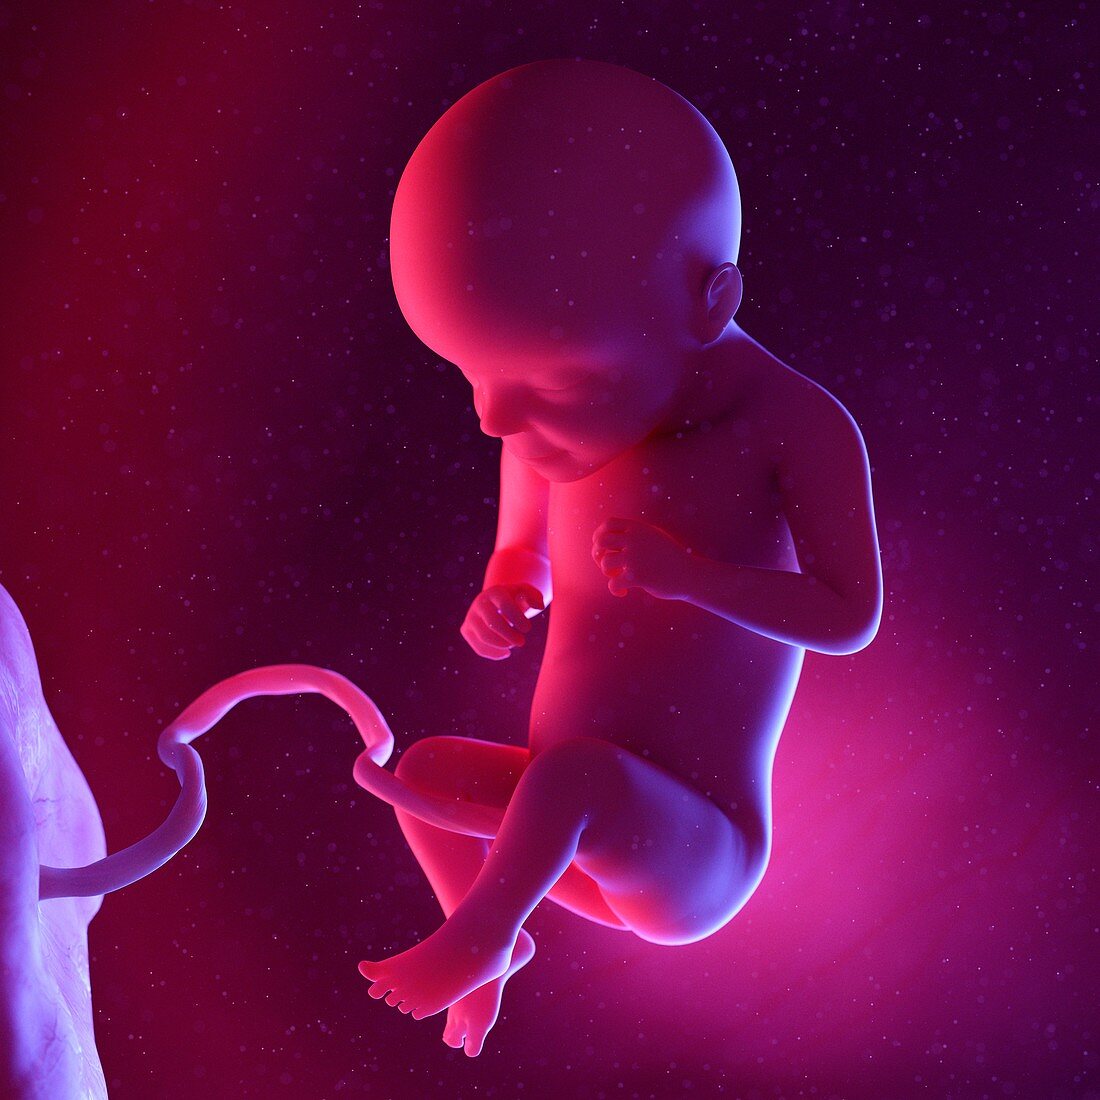 Fetus at week 29, illustration